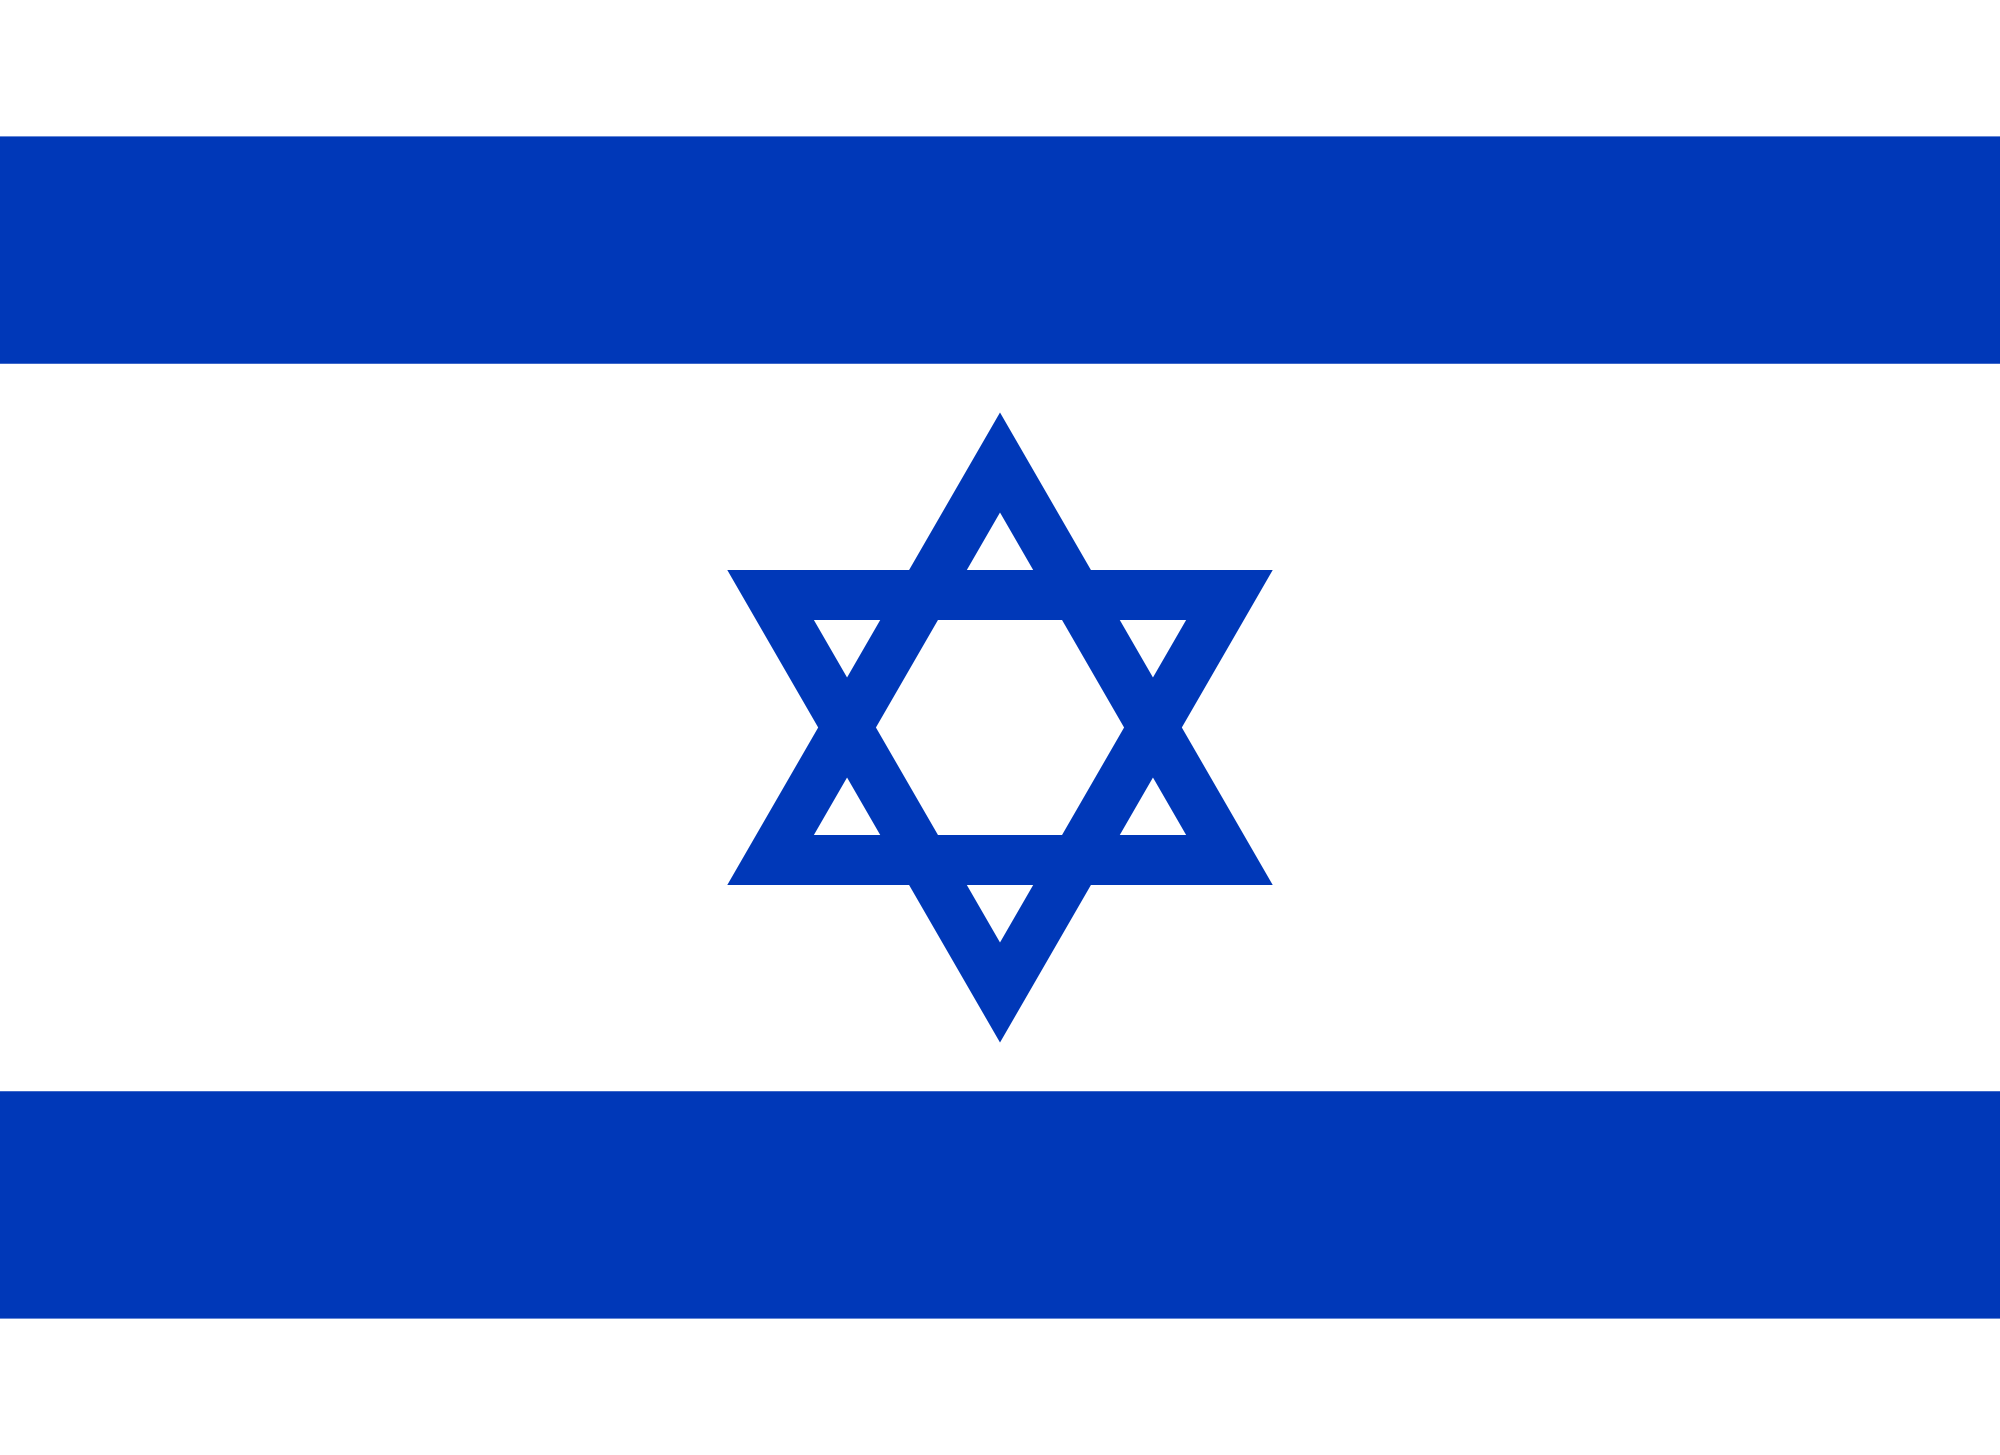 Israel flag image - free down